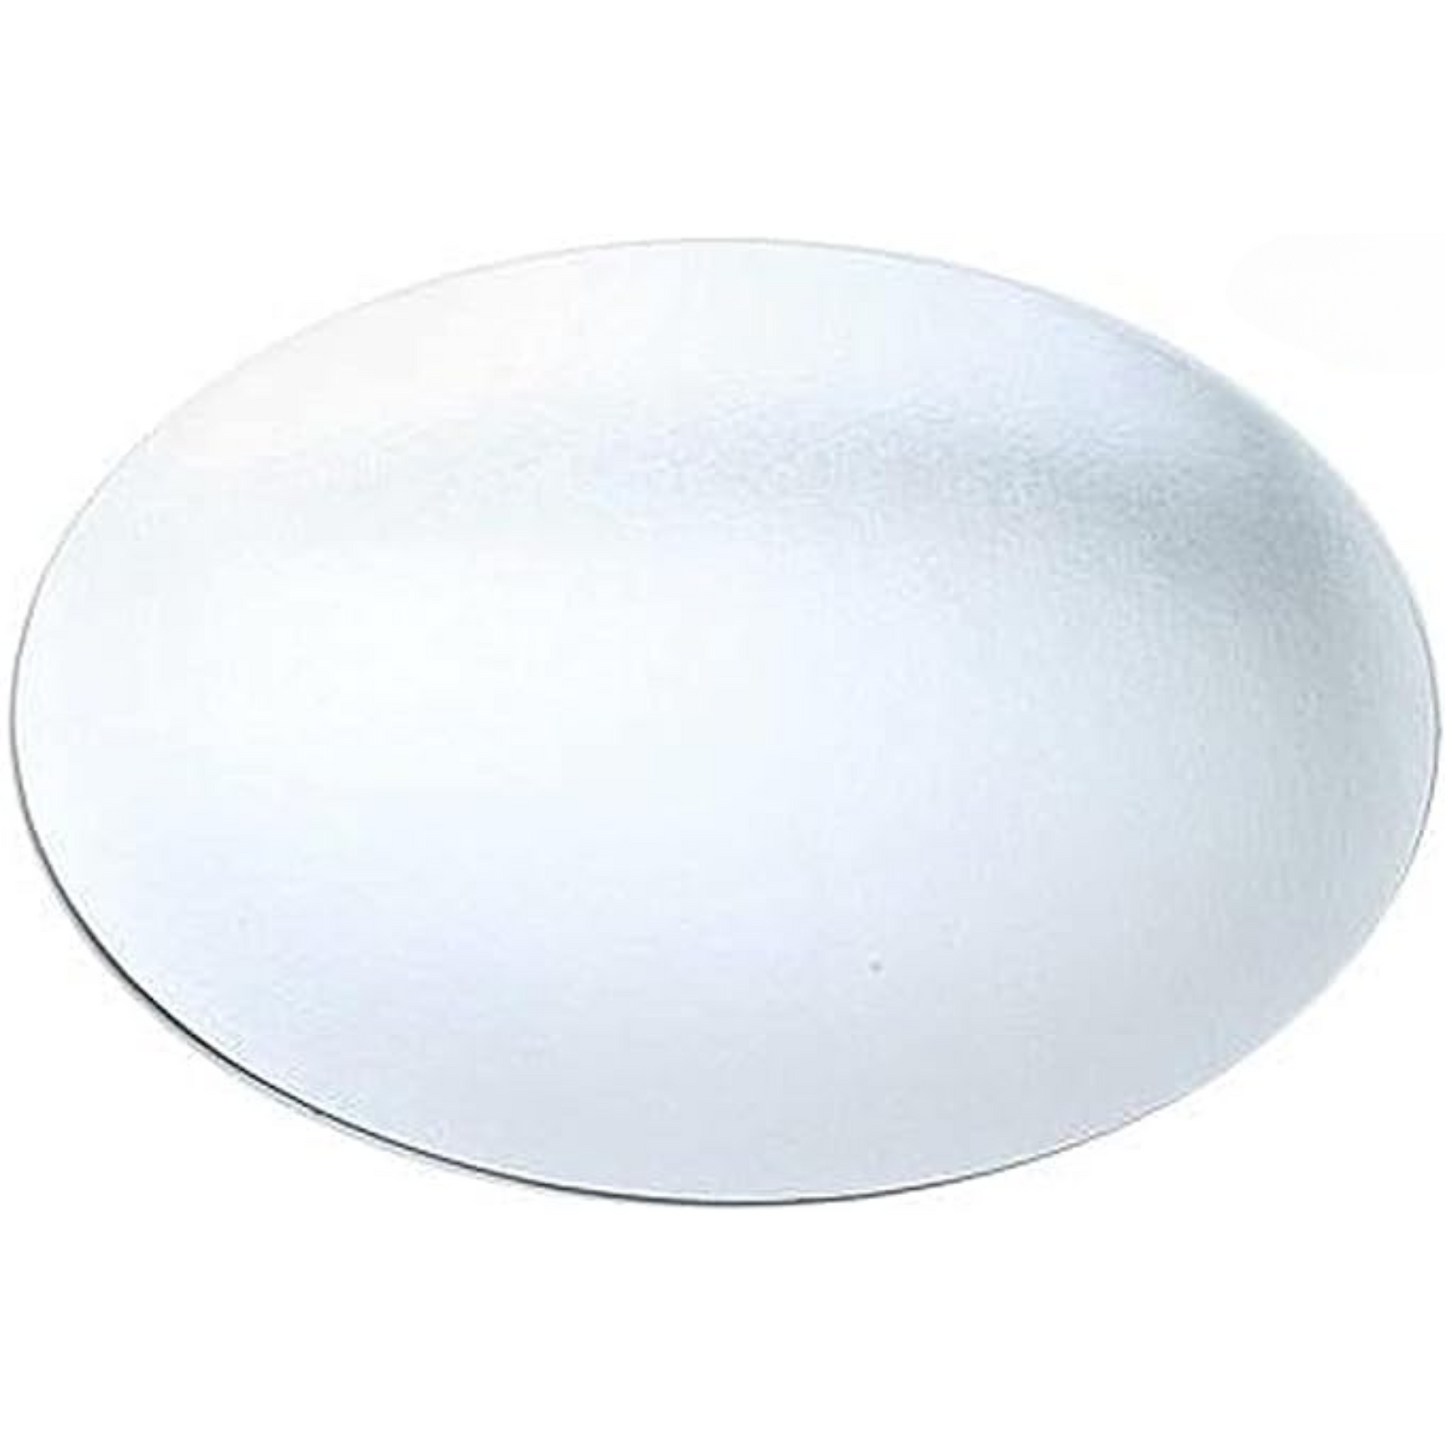 *WHOLESALE* Board Lids for 7" Aluminum Round Pan| 500 ct/case Disposable JetFoil   